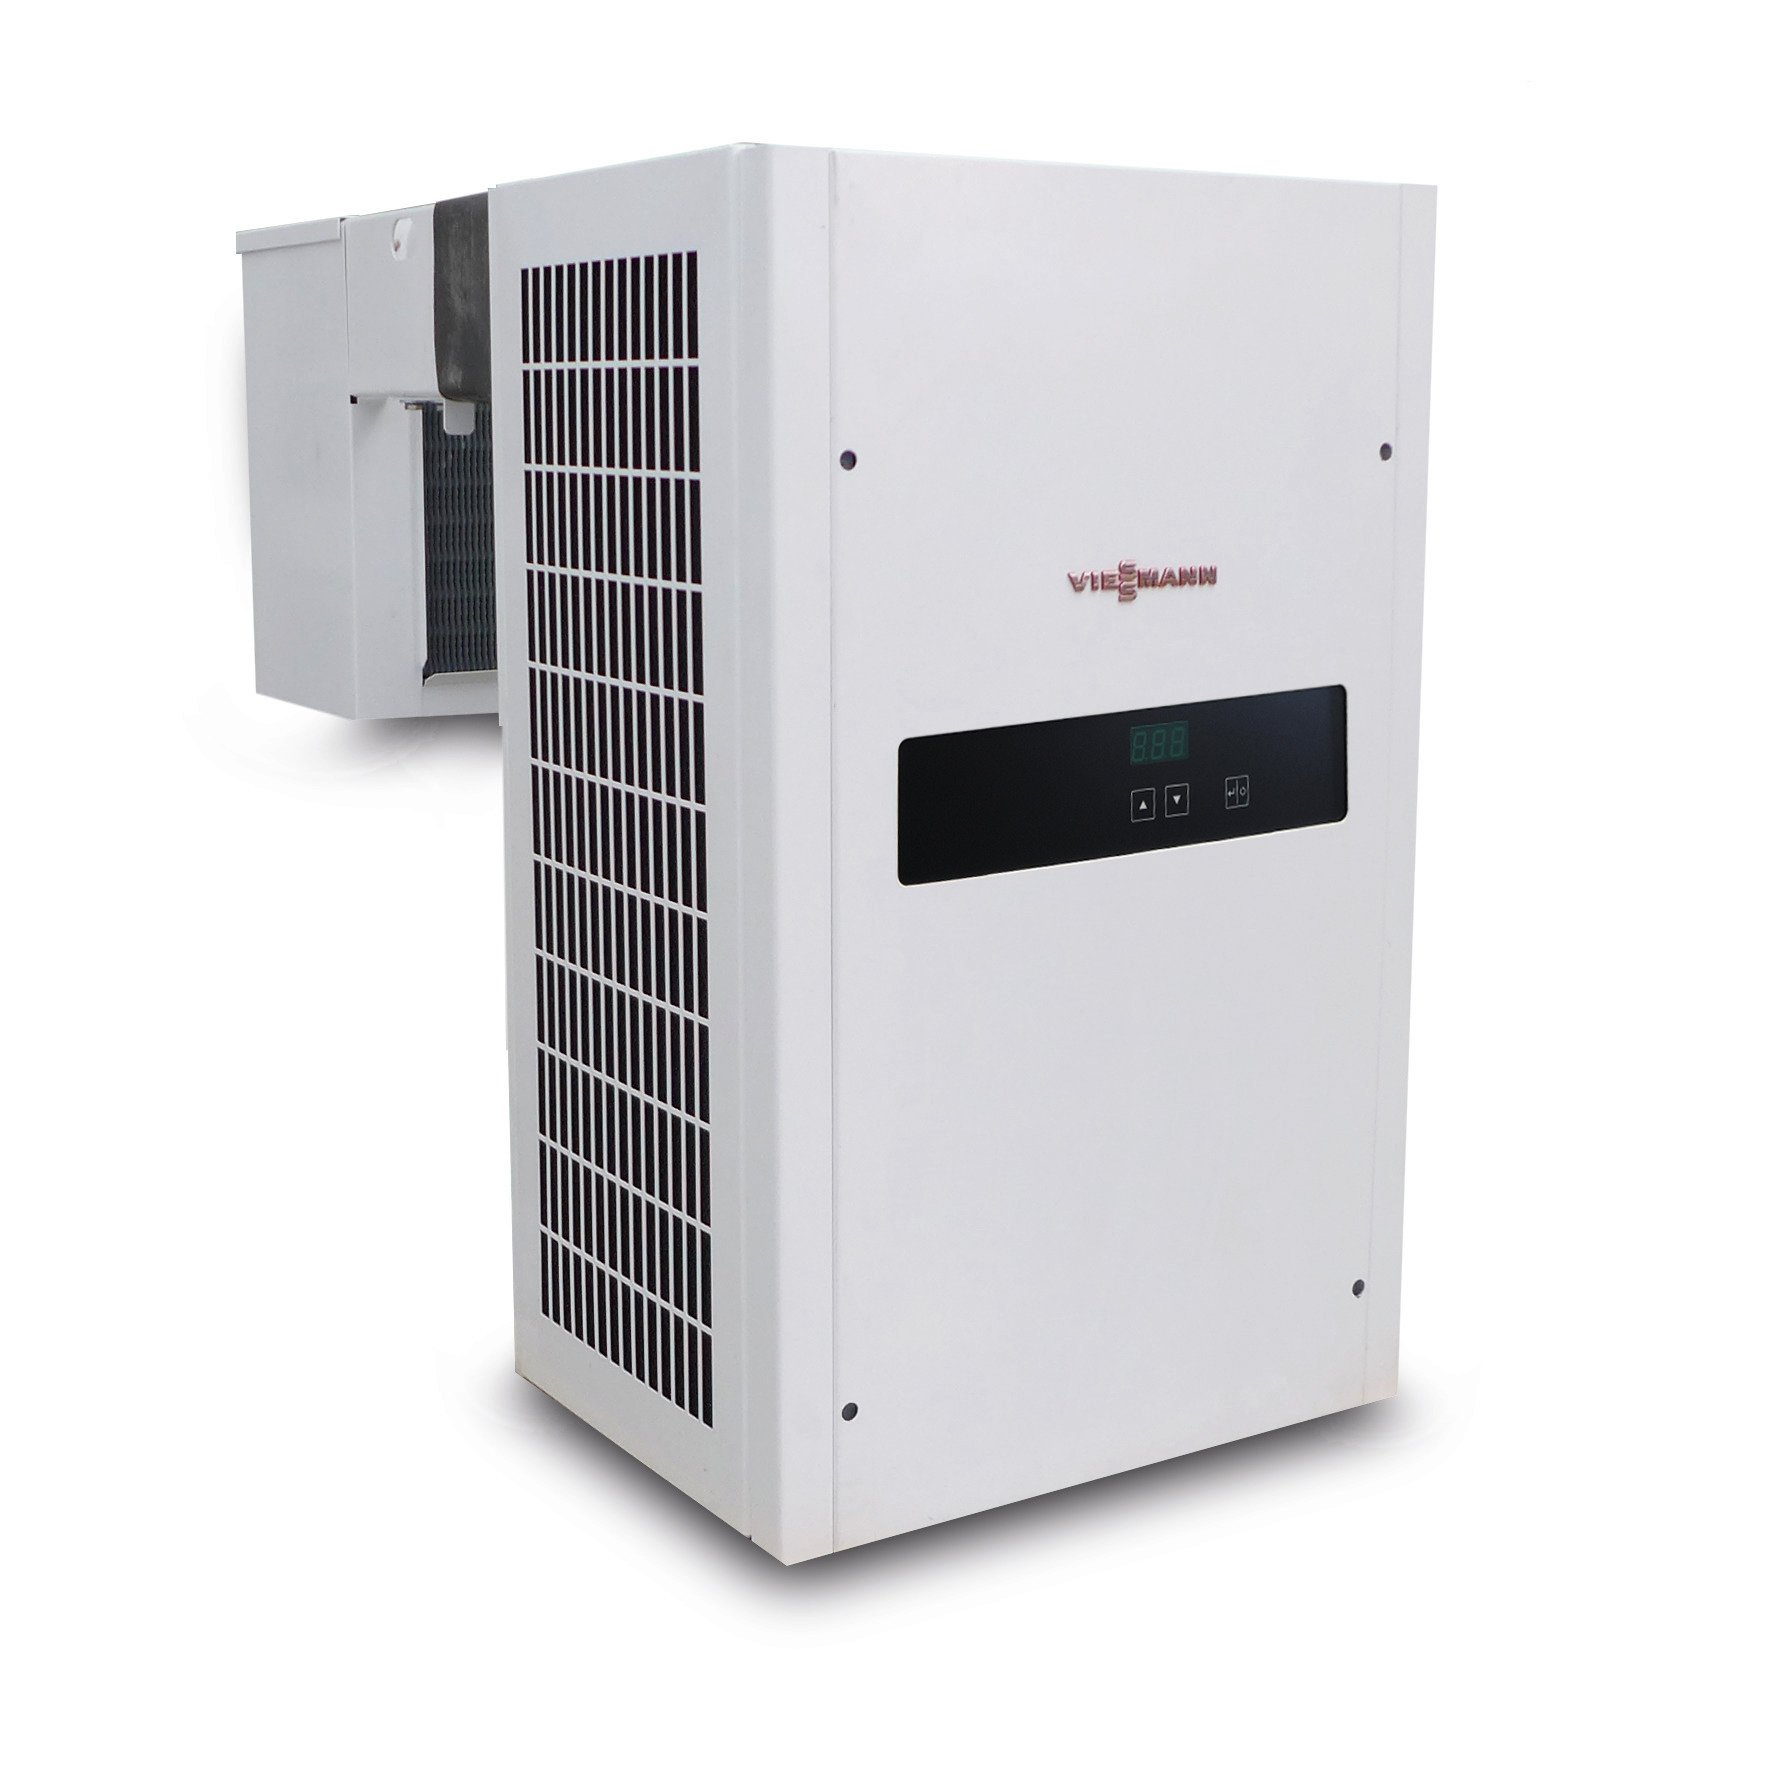 Huckepack-Kühlaggregat 2,05 kW / 230 V mit elektronischer Regelung